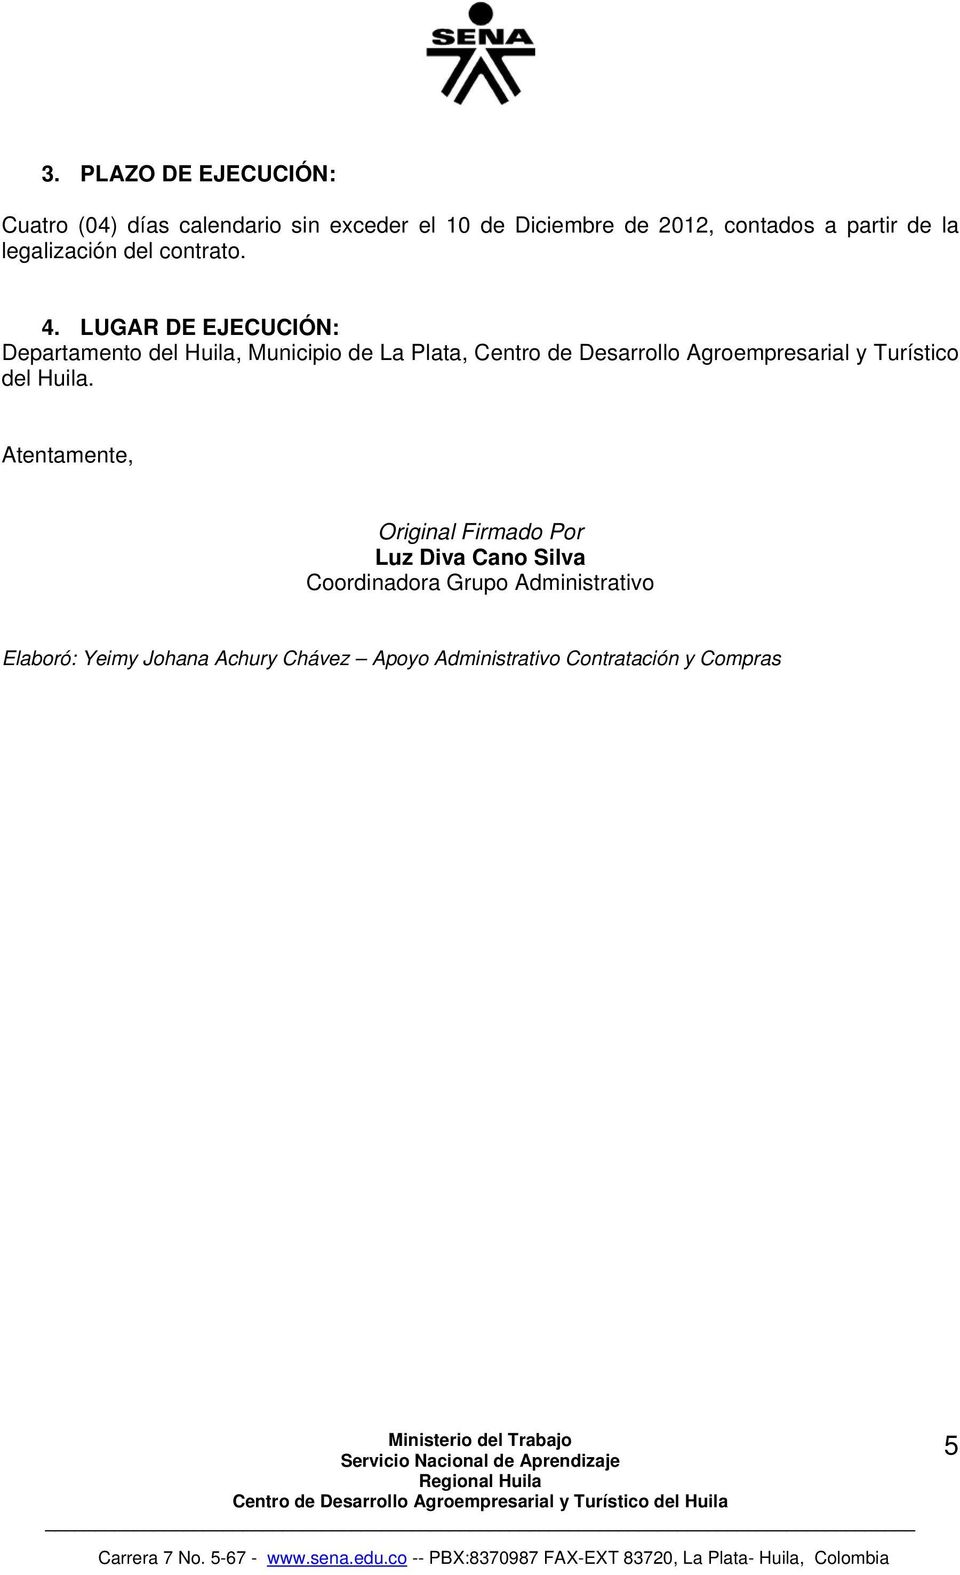 LUGAR EJECUCIÓN: Departamento del Huila, Municipio de La Plata, Centro de Desarrollo Agroempresarial y